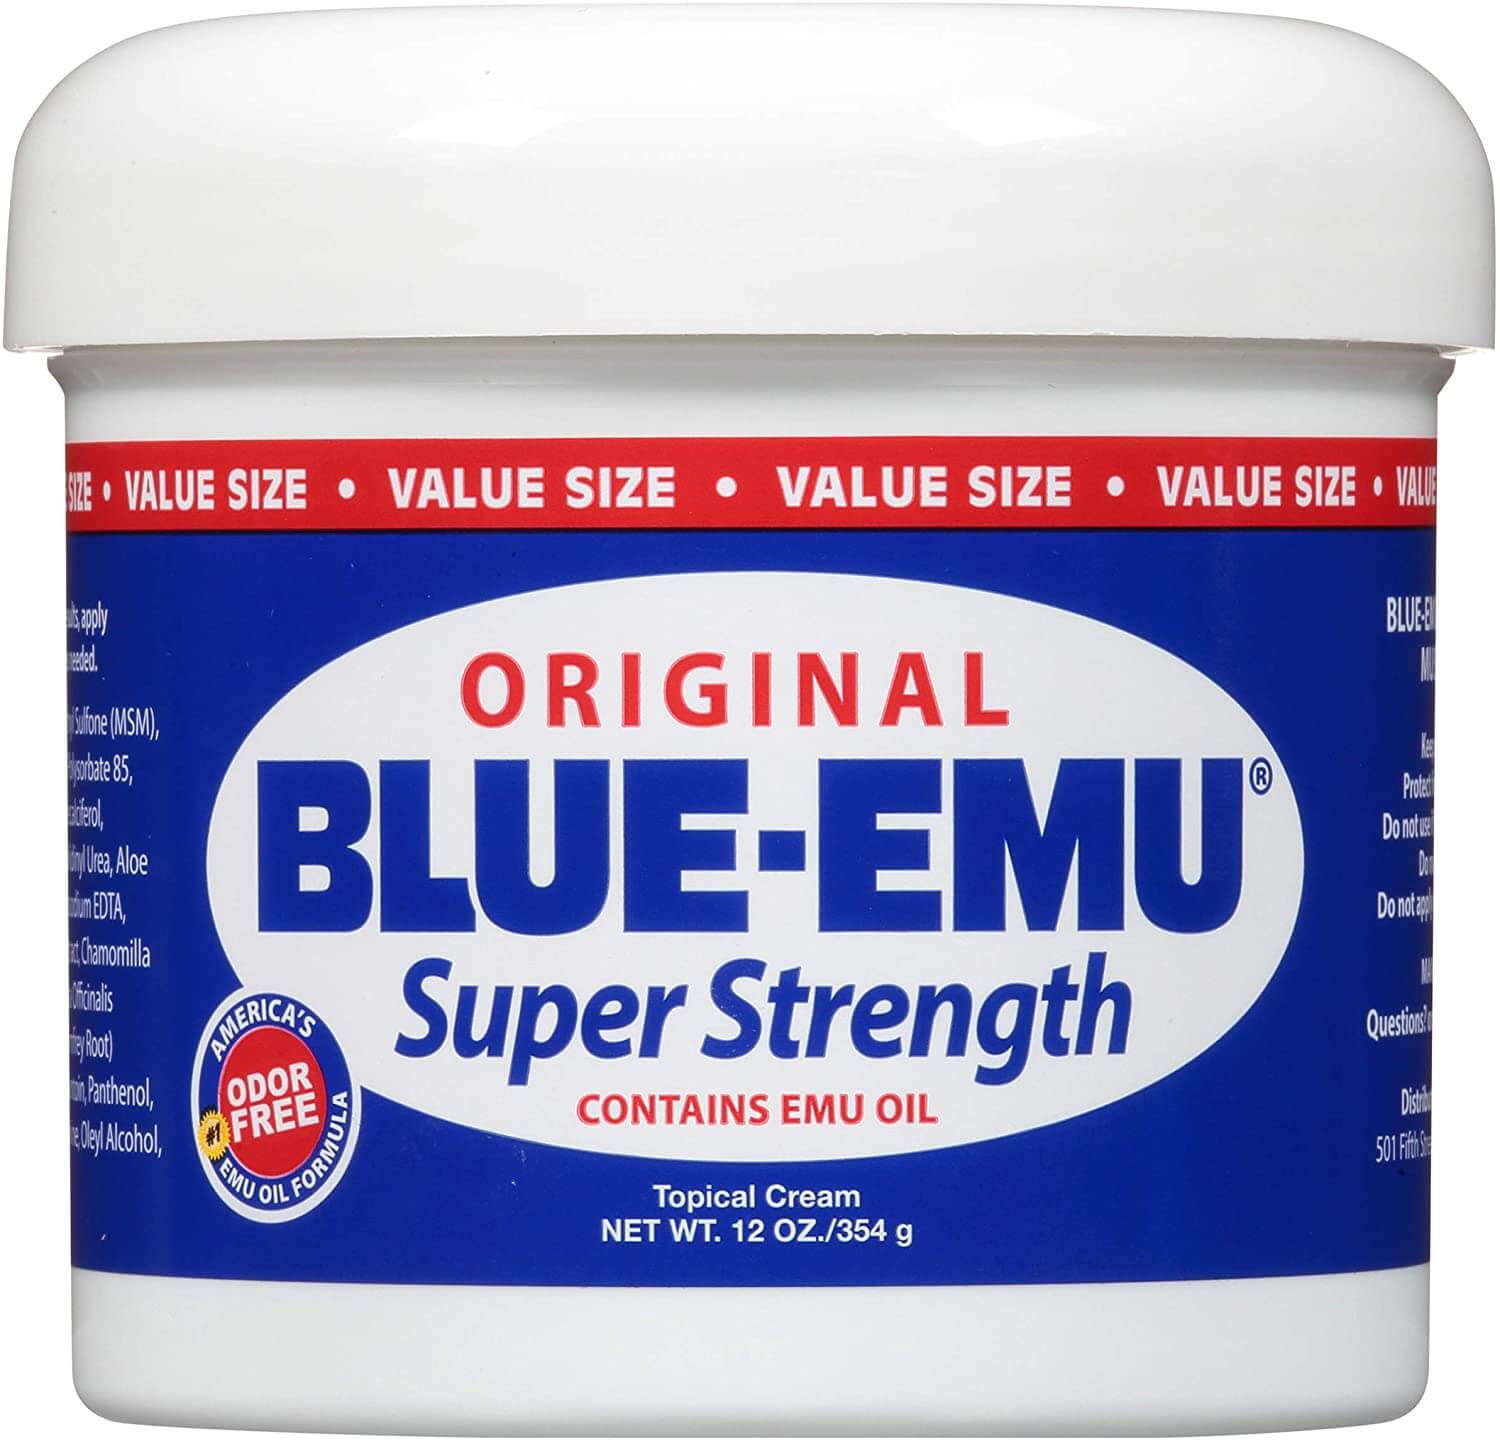 Blue Emu Original Analgesic Cream Review